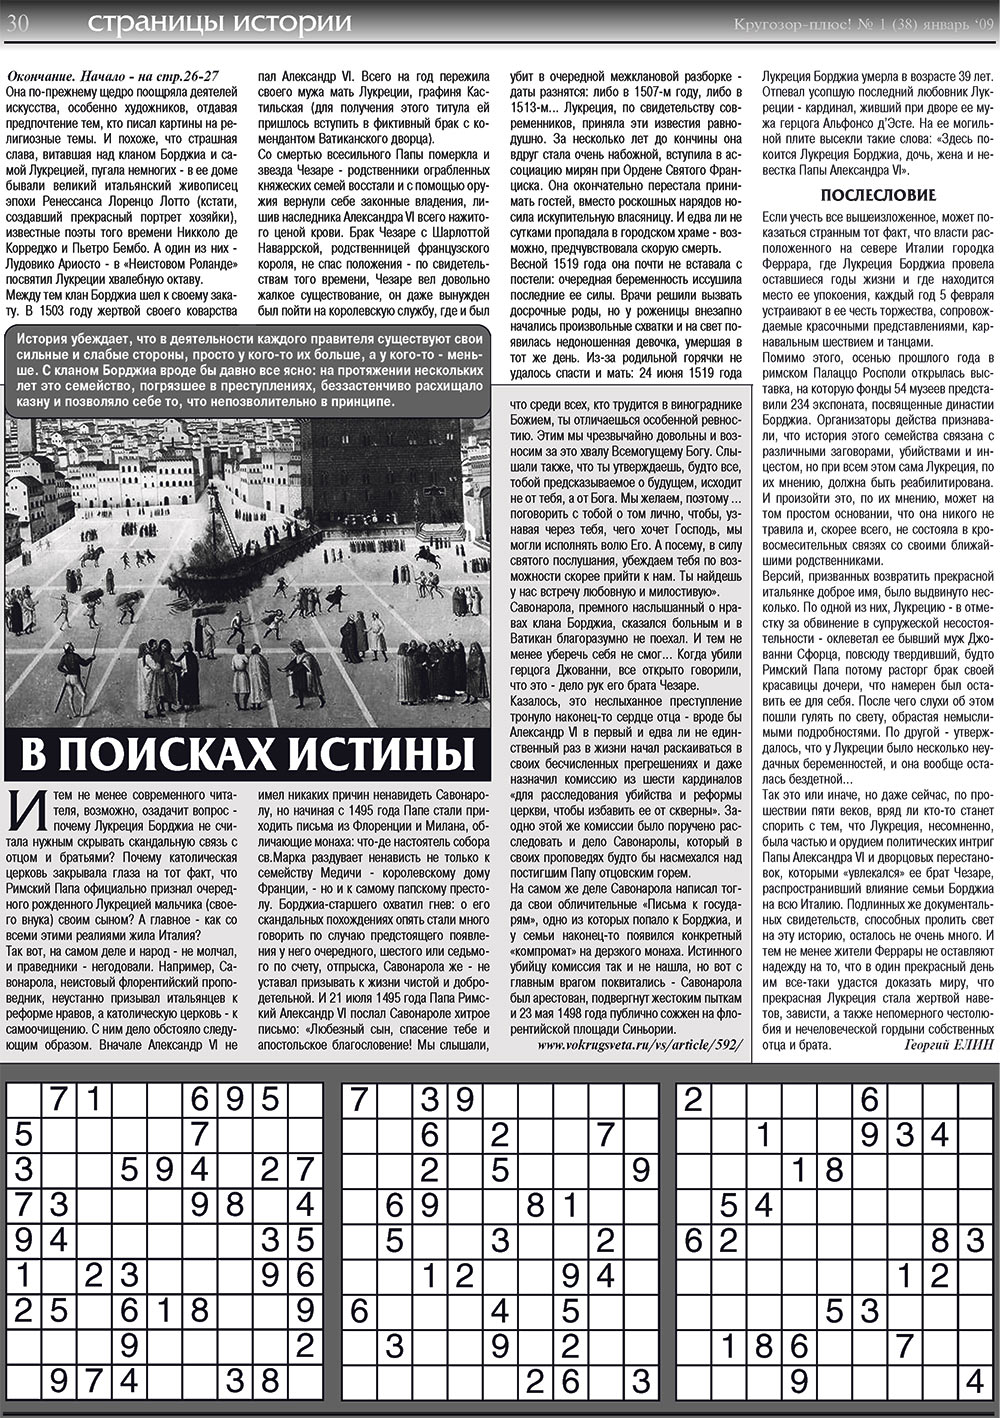 Кругозор плюс!, газета. 2009 №1 стр.30